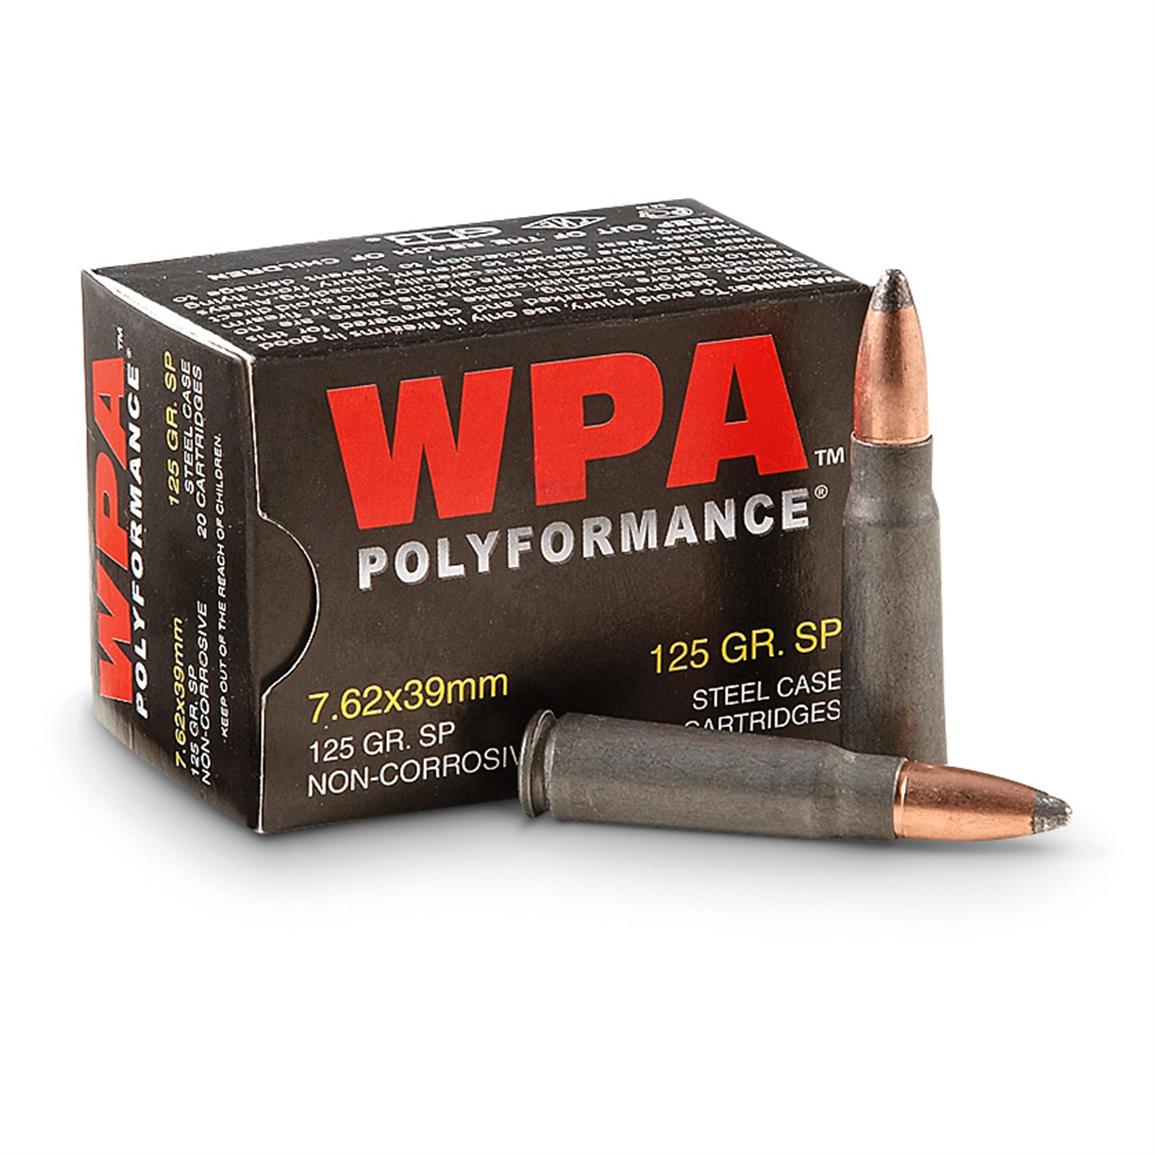 Wolf Polyformance, 7.62x39mm, SP, 125 Grain, 260 Rounds